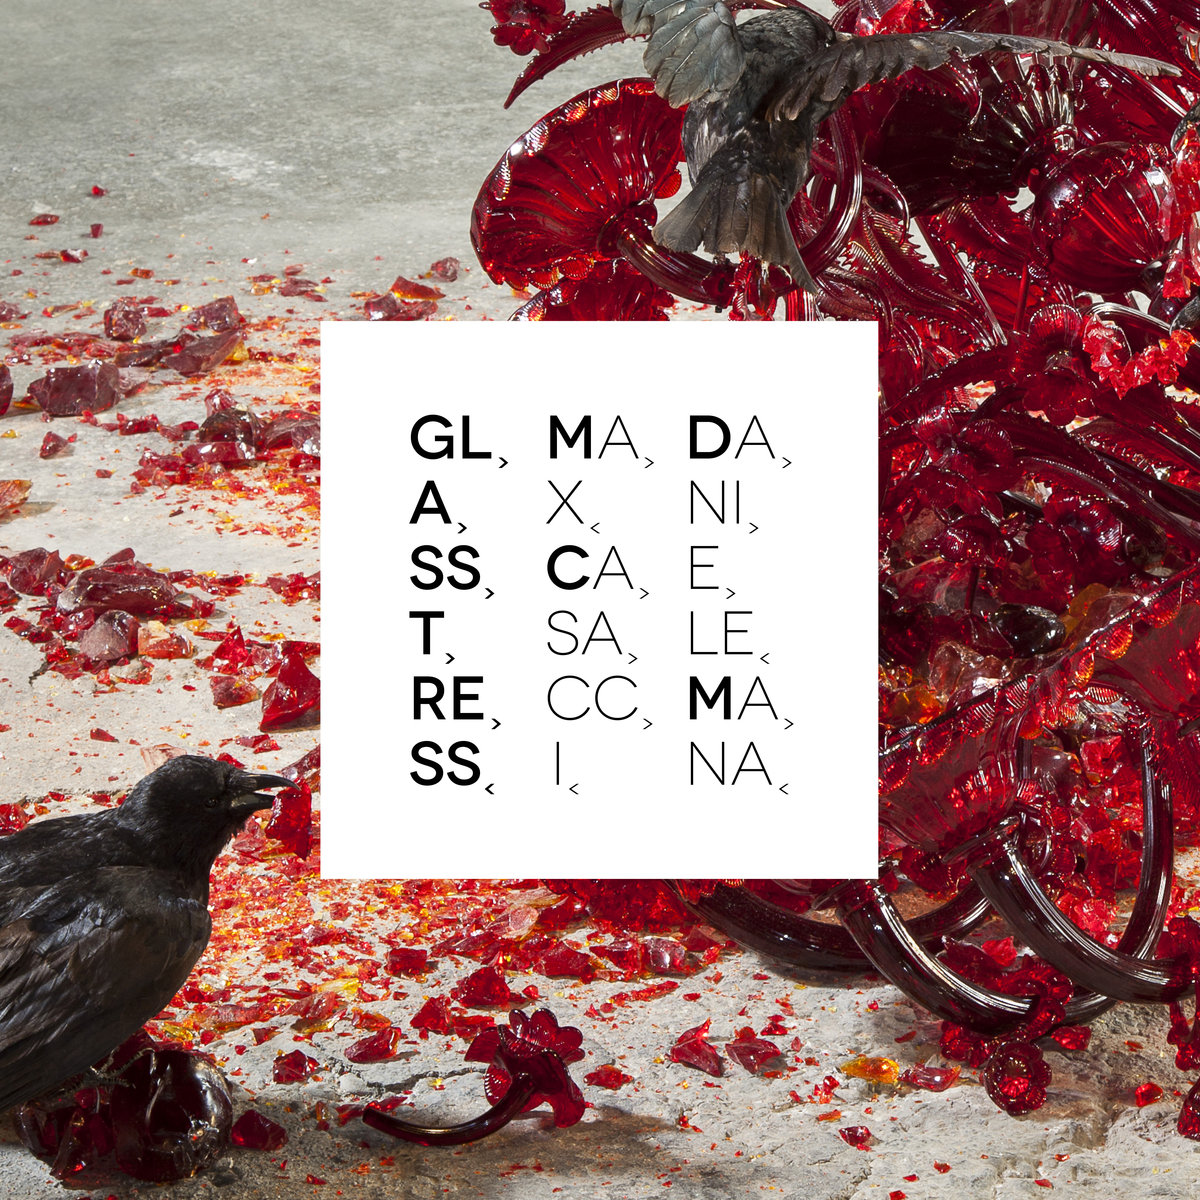 Max Casacci & Daniele Mana - Vetrosequenza @ 'Glasstress' album (alternative, electronic)